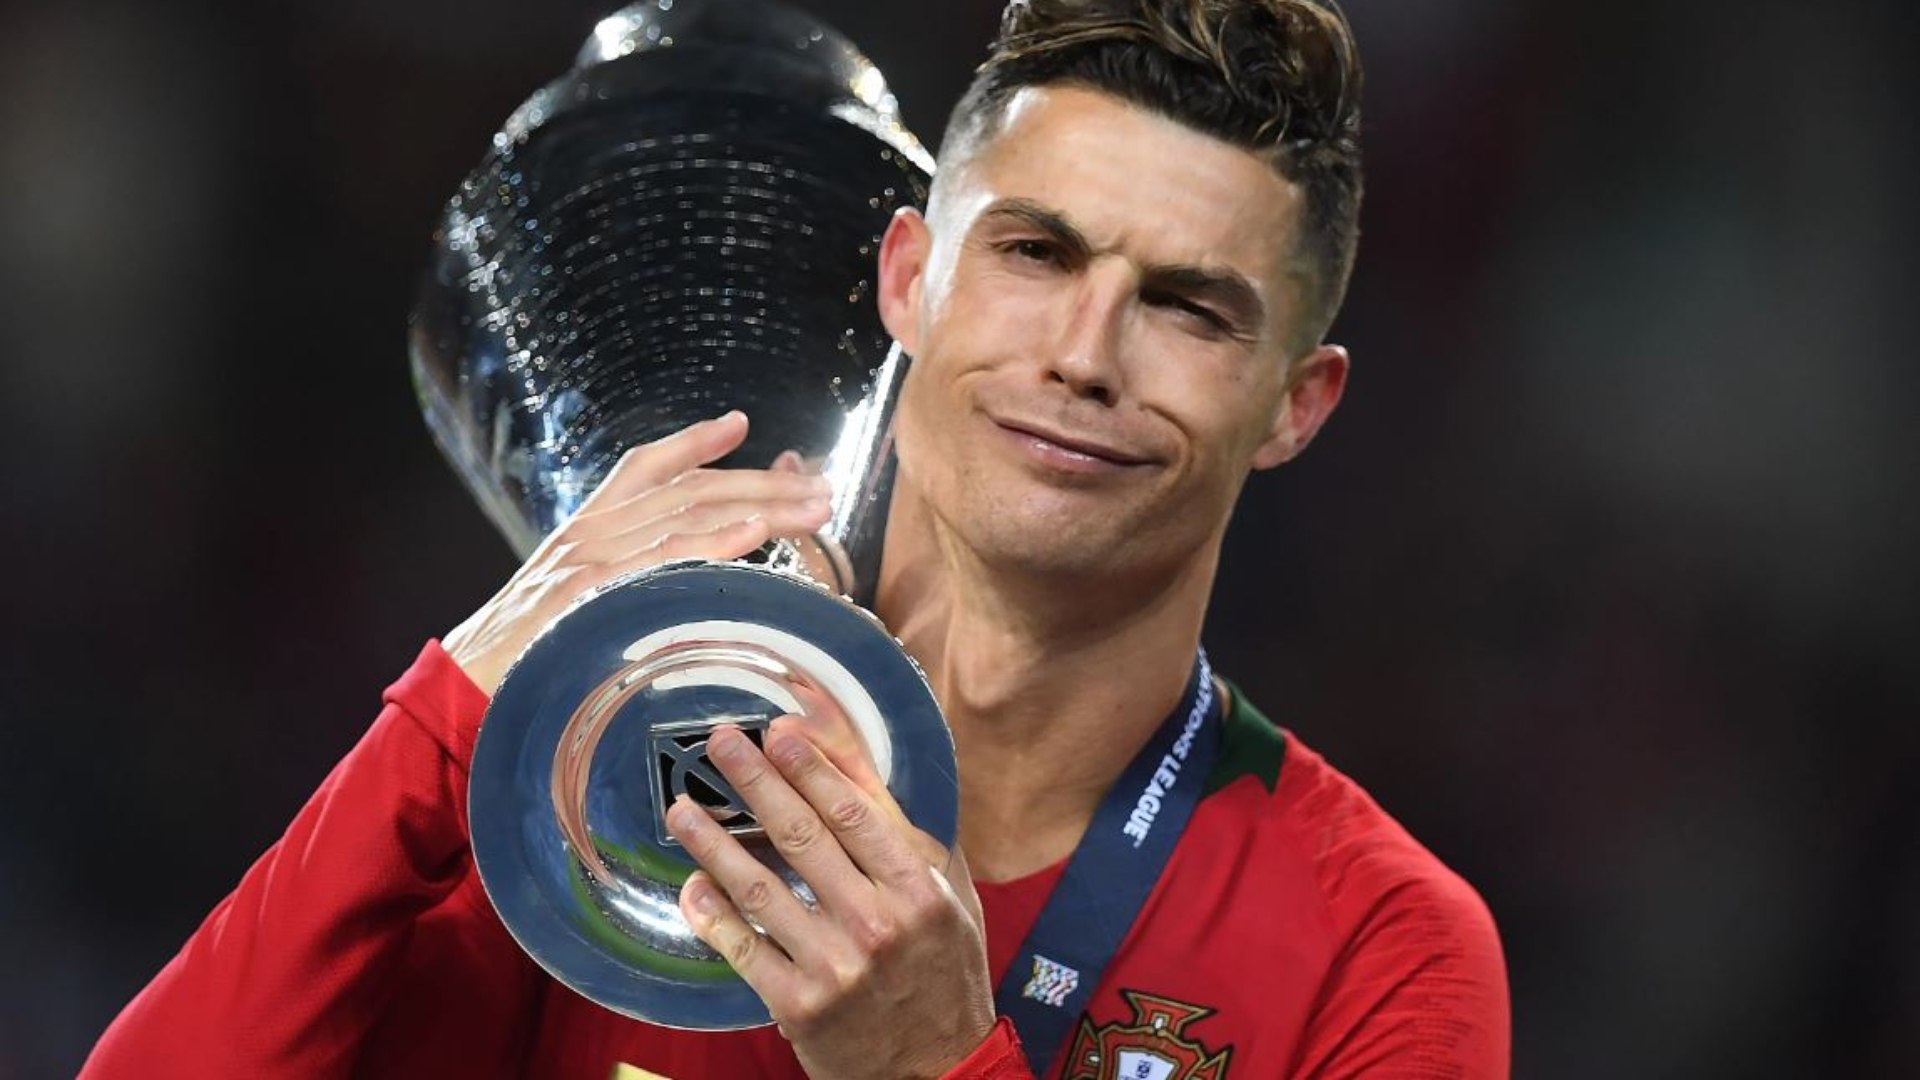 MAIS UM RECORDE PARA CR7!  Português será primeiro jogador de futebol a atingir US$ 1 bilhão em receitas